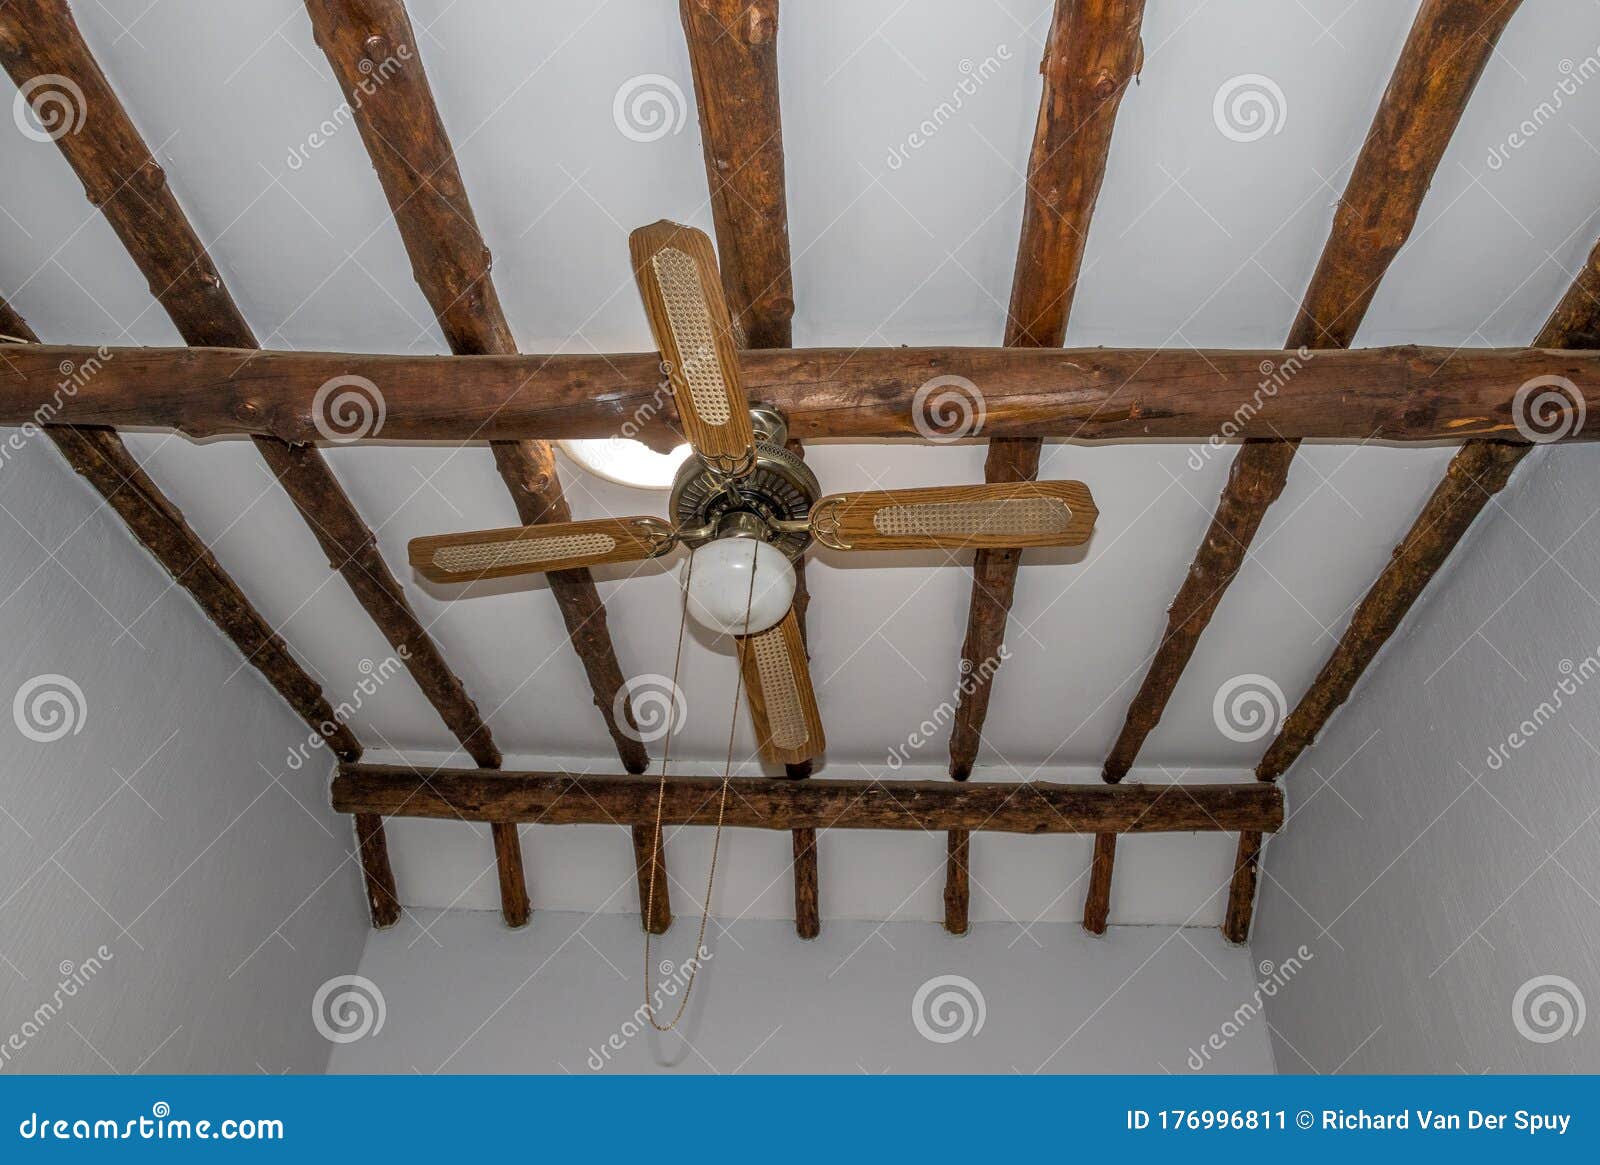 Деревянный потолок с декоративными балками: 165+ (Фото) дизайна и отделки